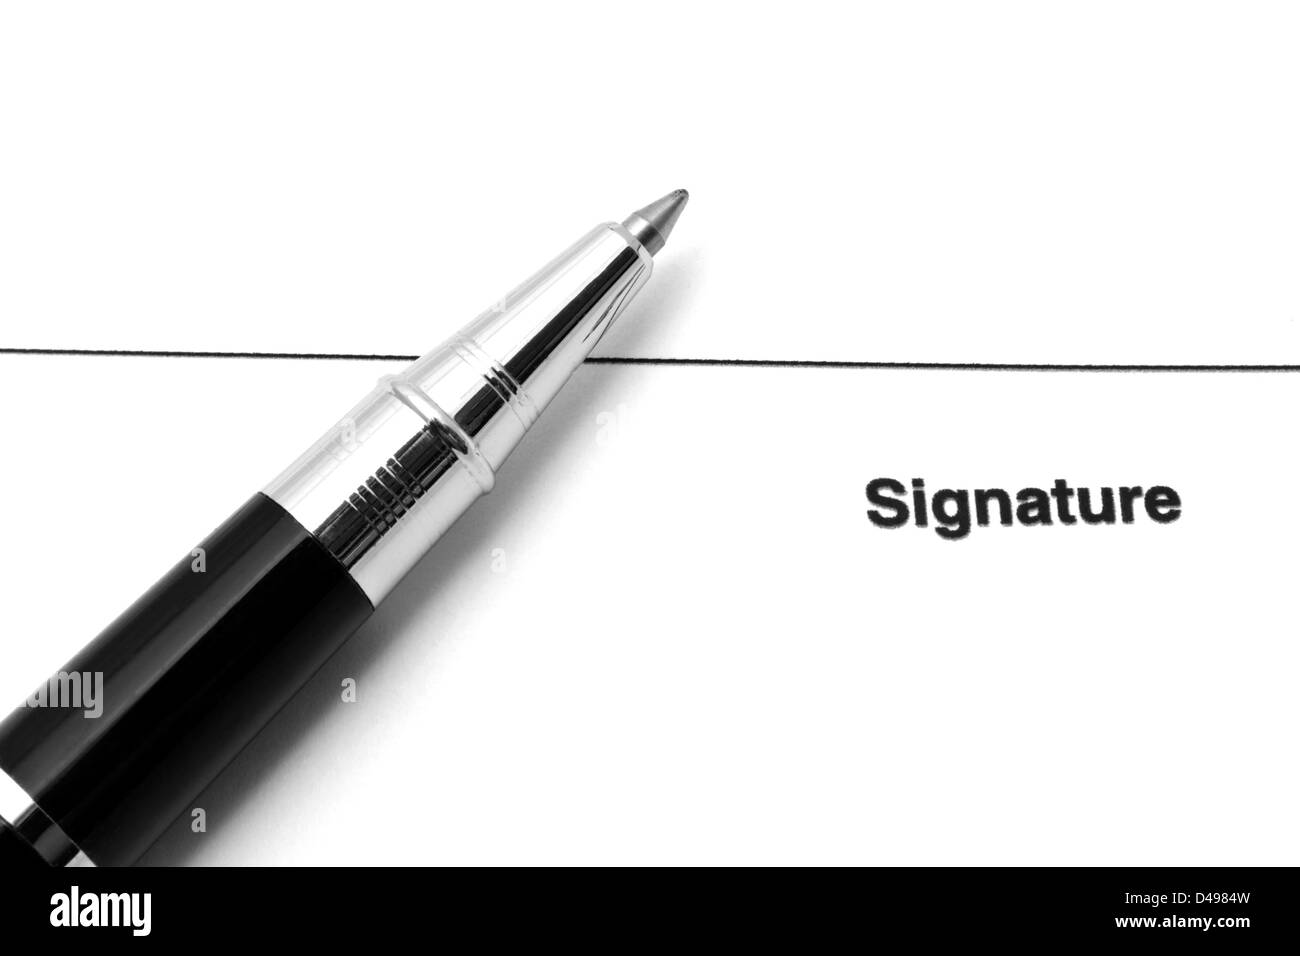 Signature document Stock Photo